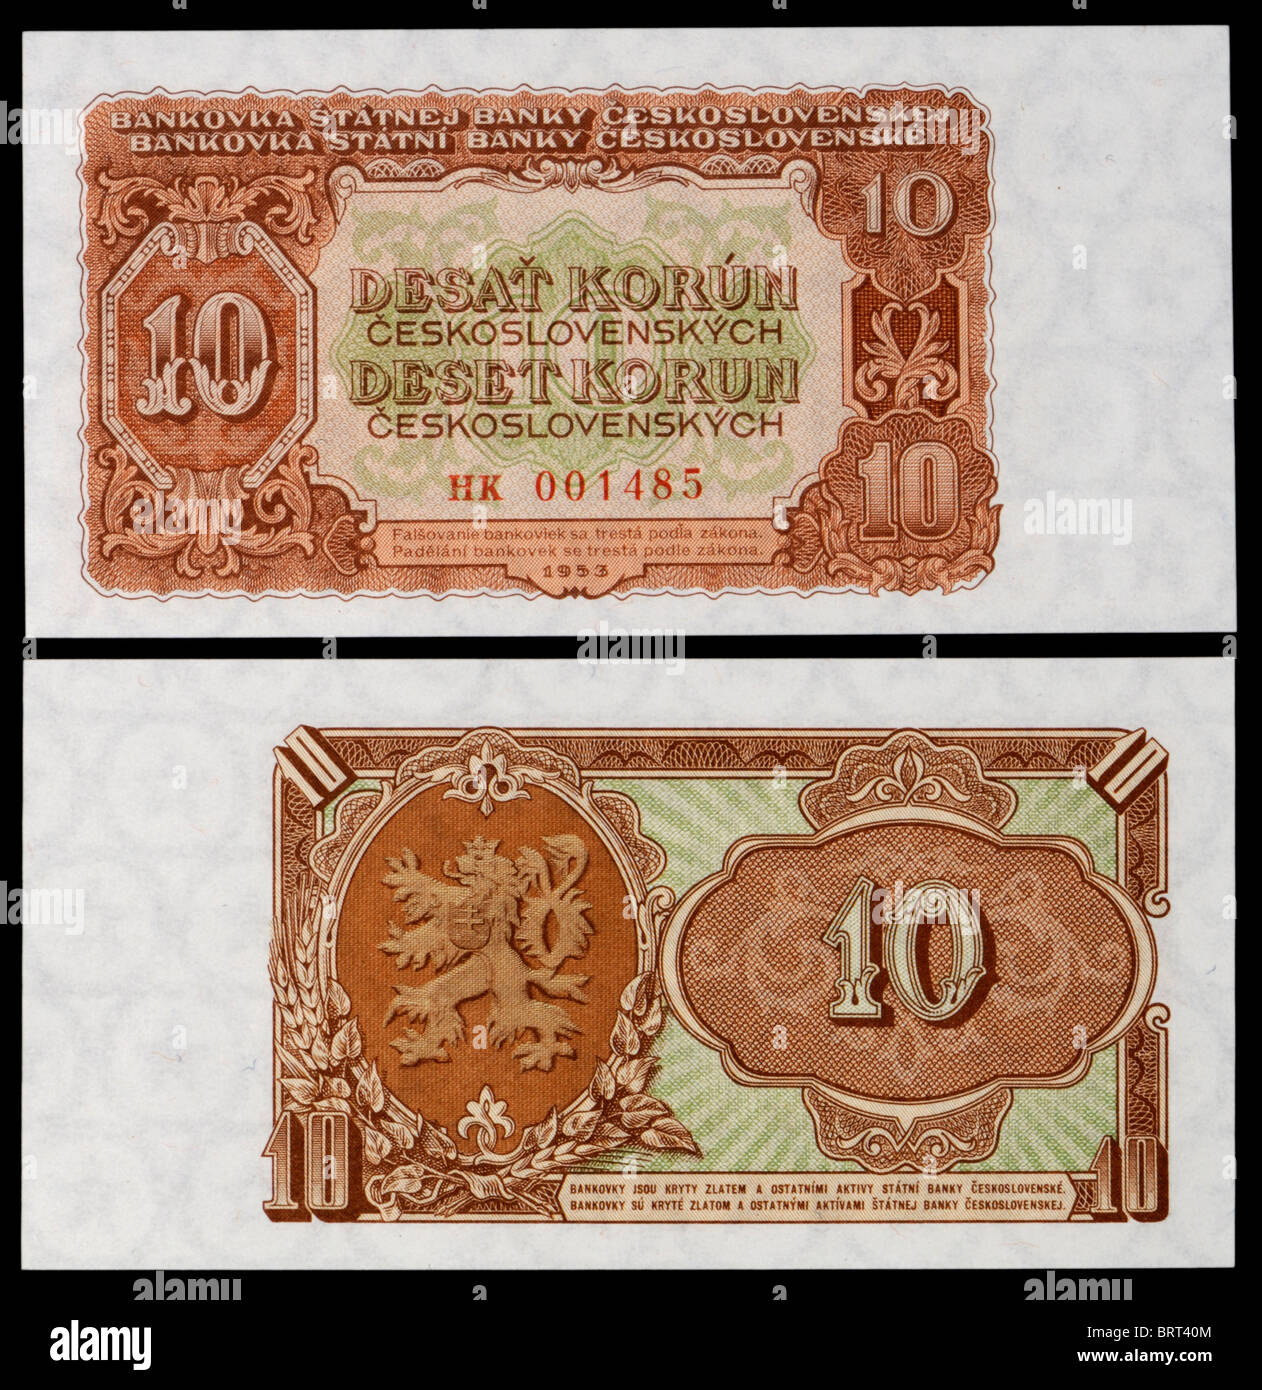 Tschechoslowakische Banknote aus dem Jahr 1953. Wüsten Korun / zehn Kronen Stockfoto